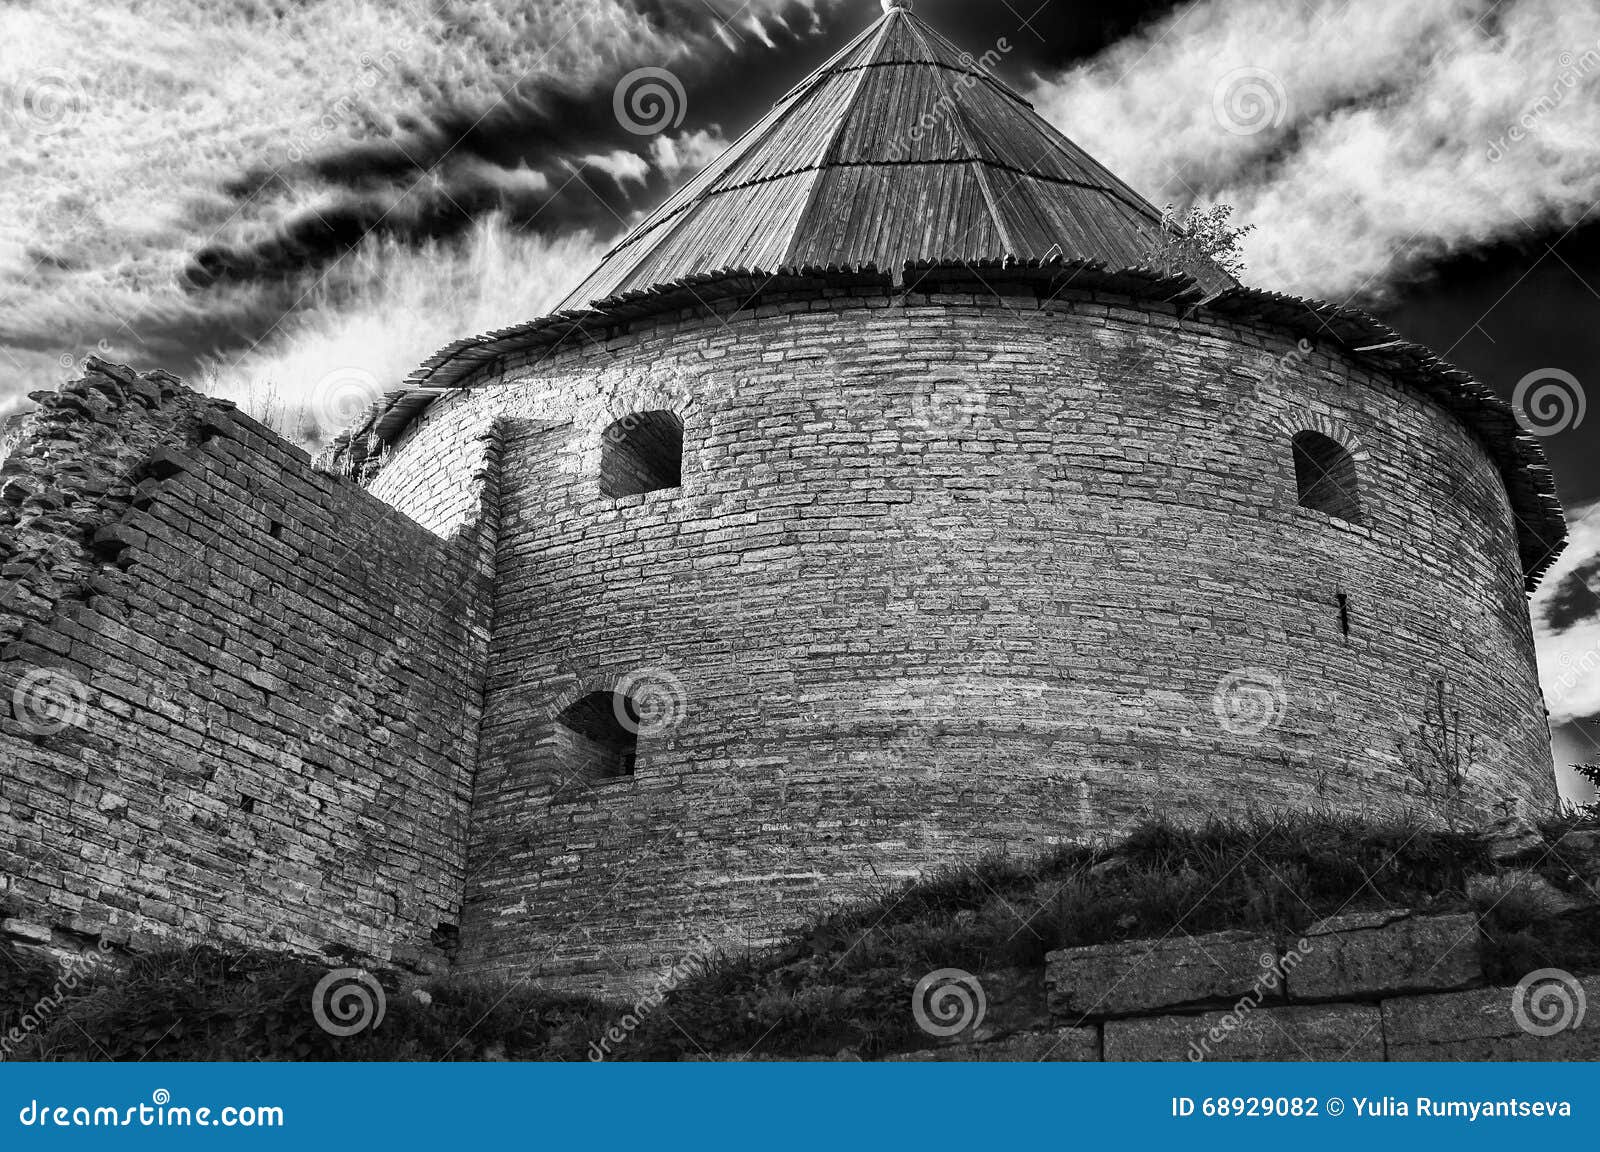 Παλαιός πύργος του φρουρίου Oreshek Shlisselburg Ρωσία. Αρχαίο ρωσικό φρούριο στο νησί καρυδιών στην πηγή του ποταμού Neva, απέναντι από την πόλη Shlisselburg στην περιοχή του Λένινγκραντ Ιδρυμένος το 1323, από το 1612 για 1702 άνηκε στους Σουηδούς